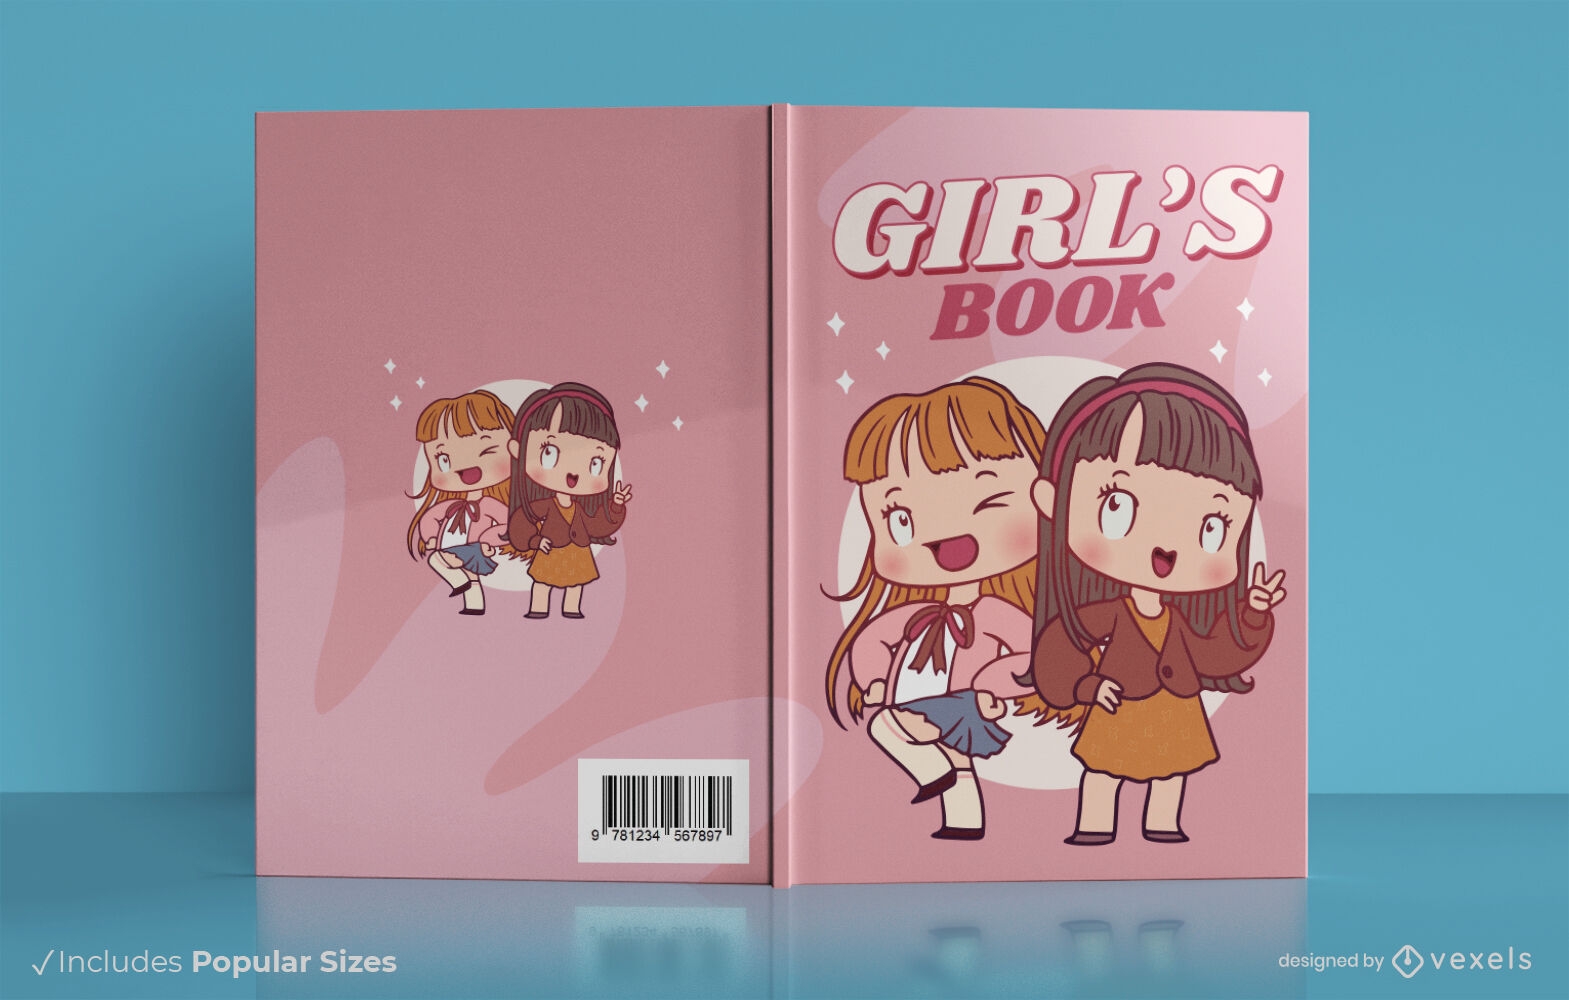 Design des Freundschaftsbuchcovers für Mädchen